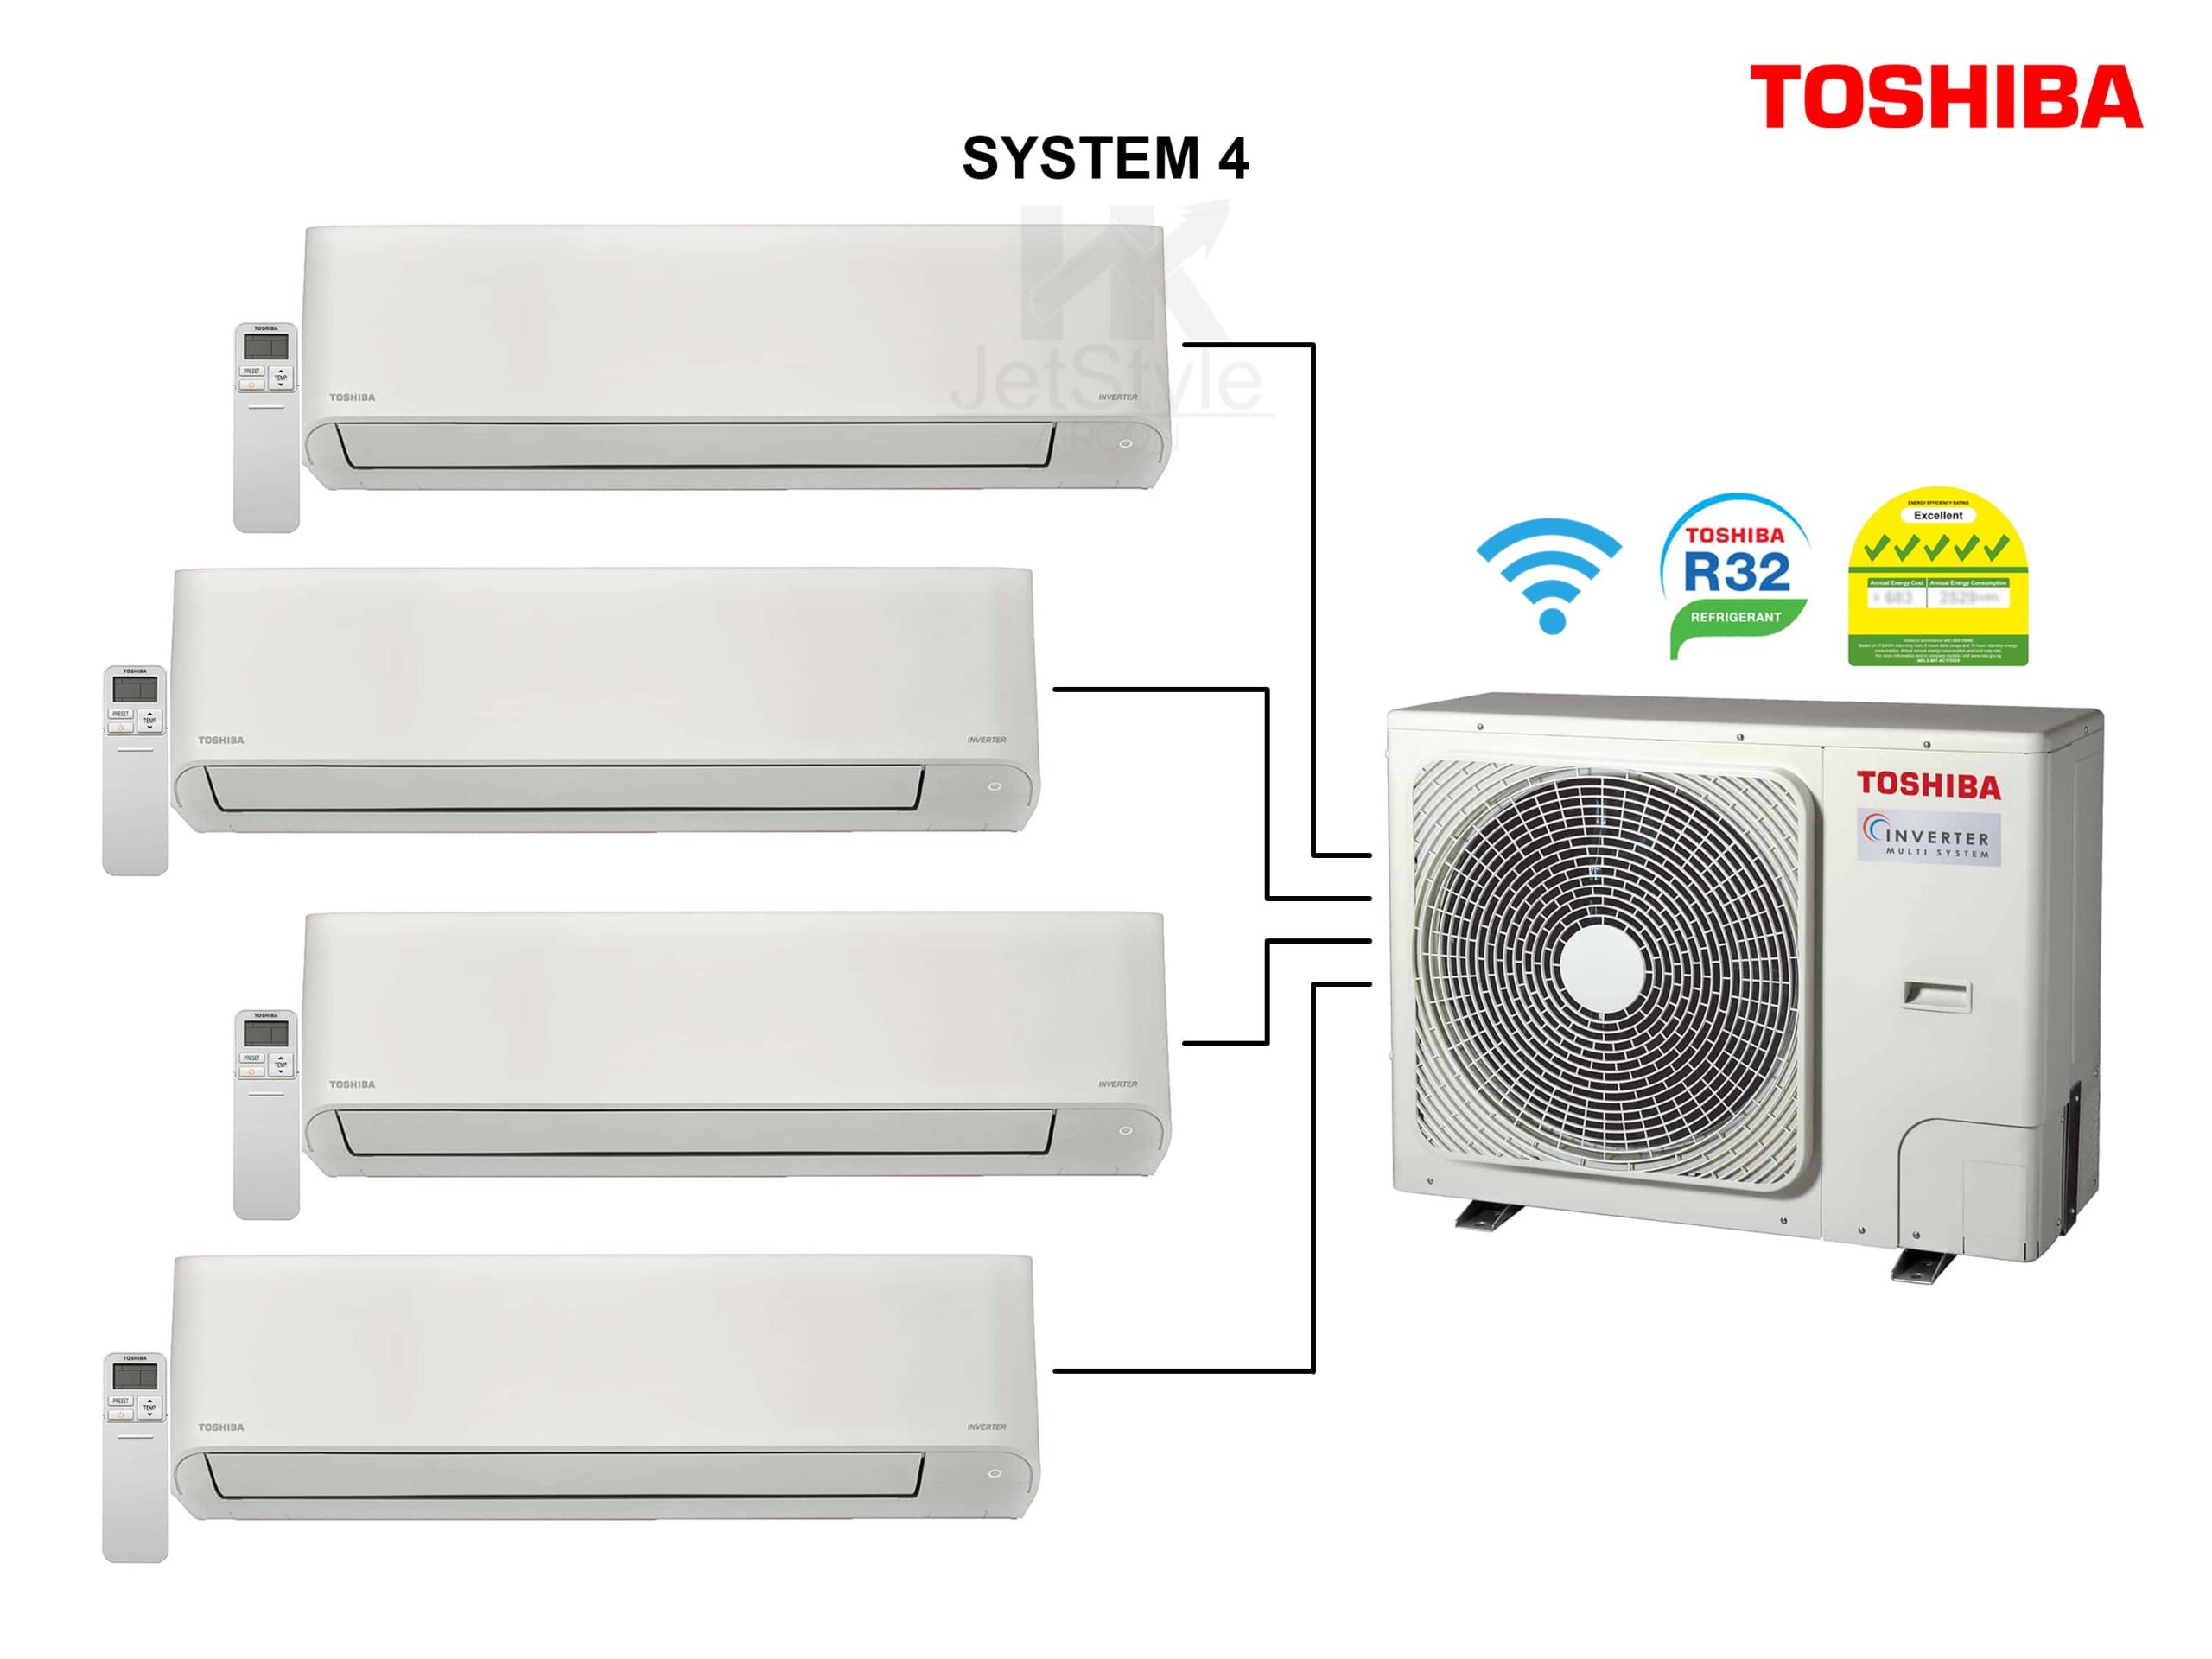 Toshiba System 4